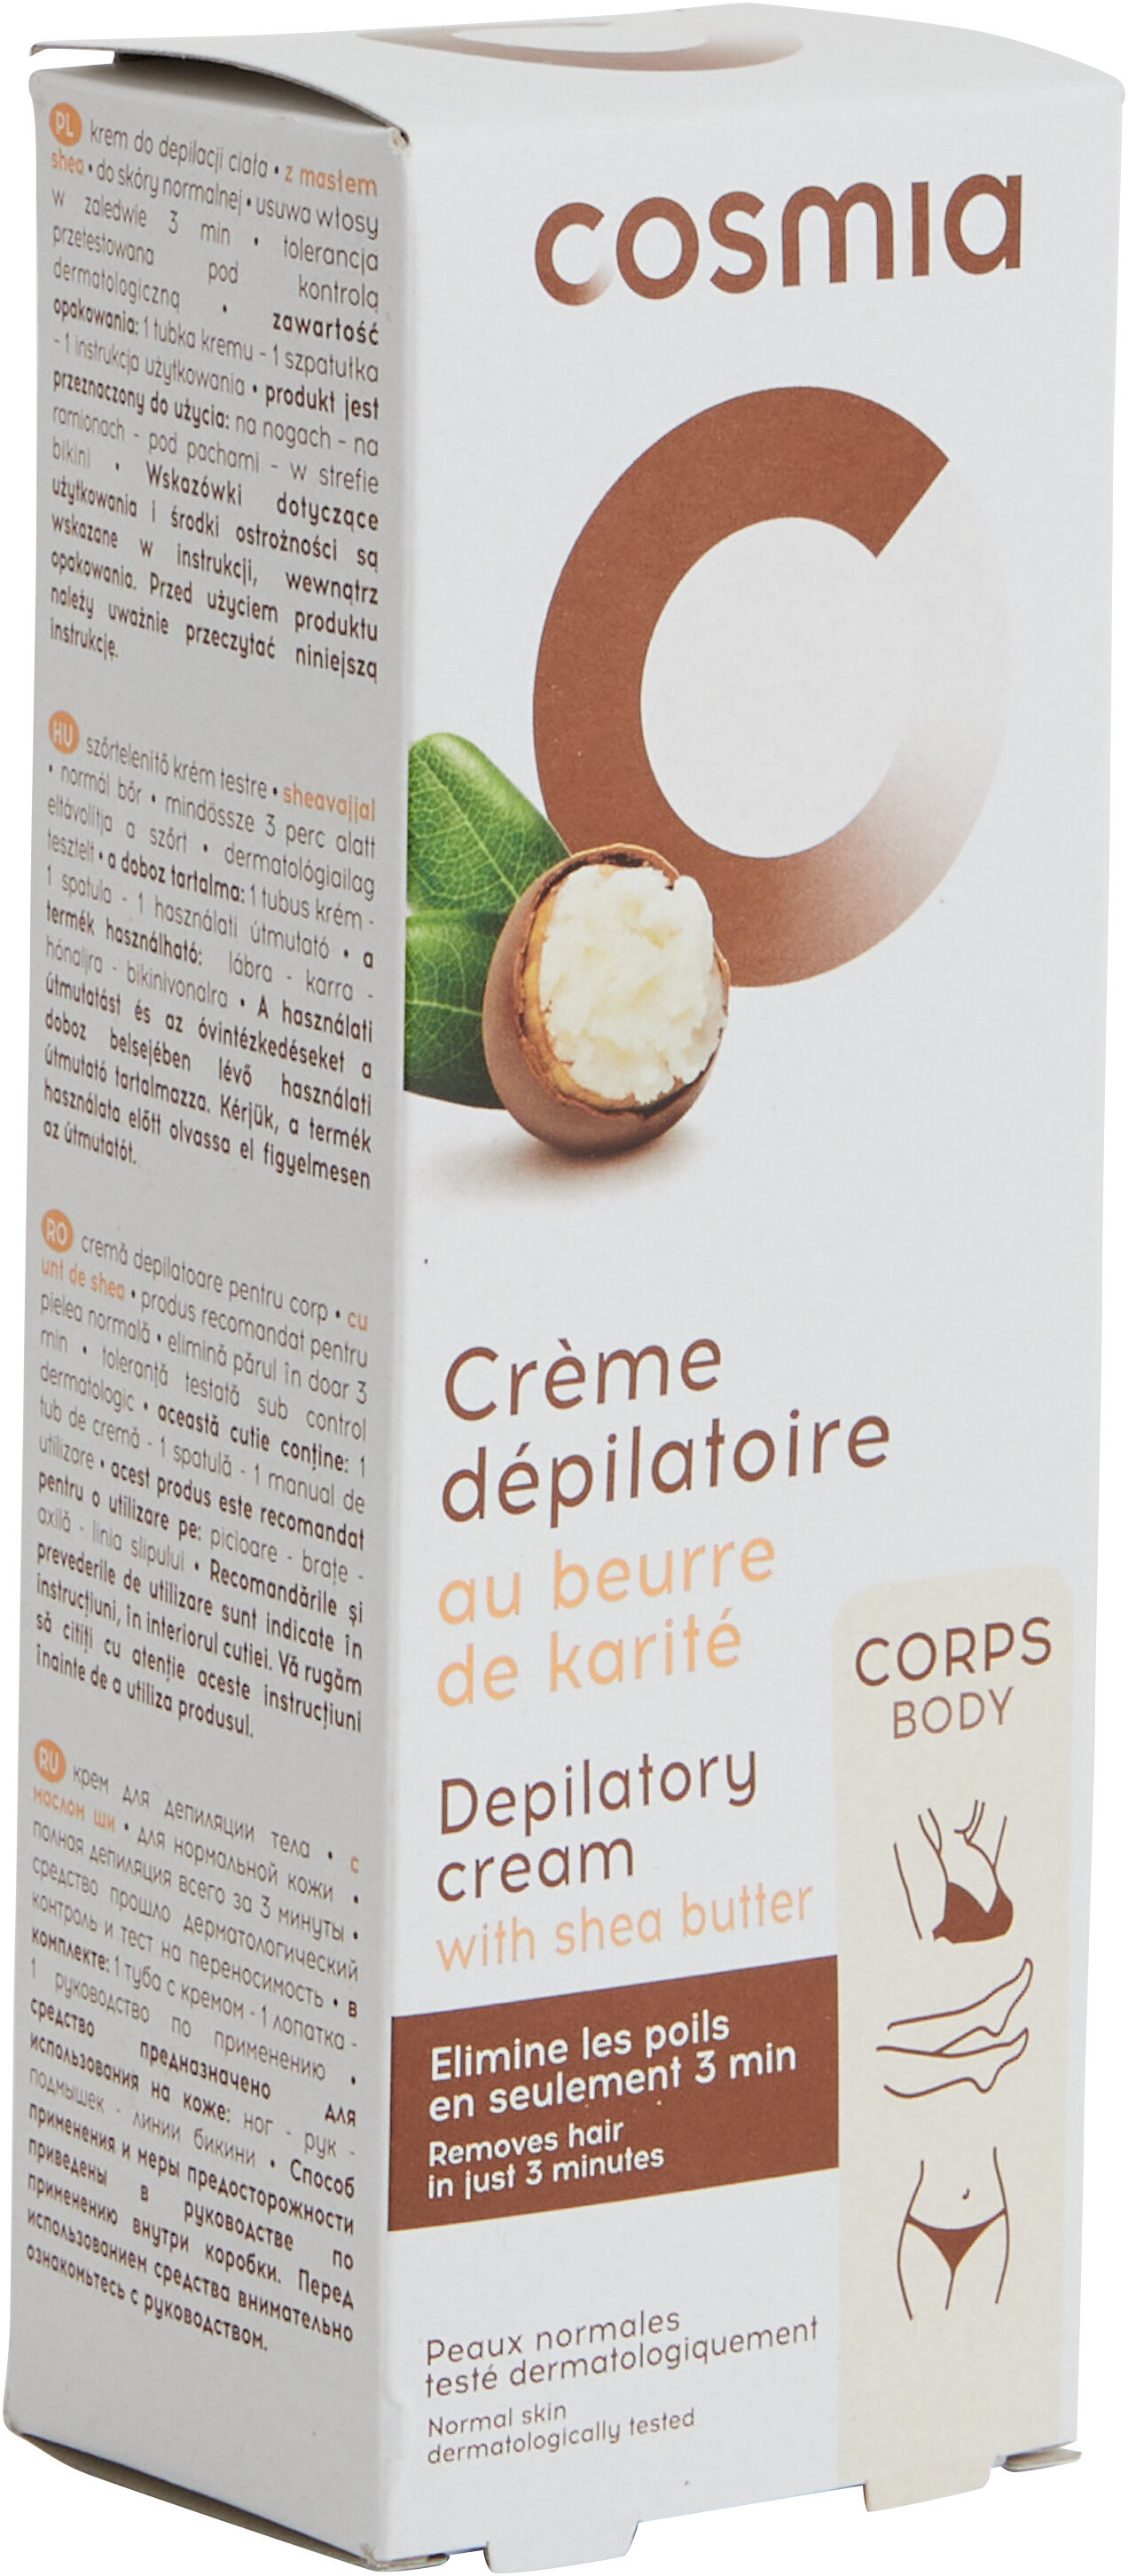 Crème dépilatoire au beurre de karité - Продукт - fr